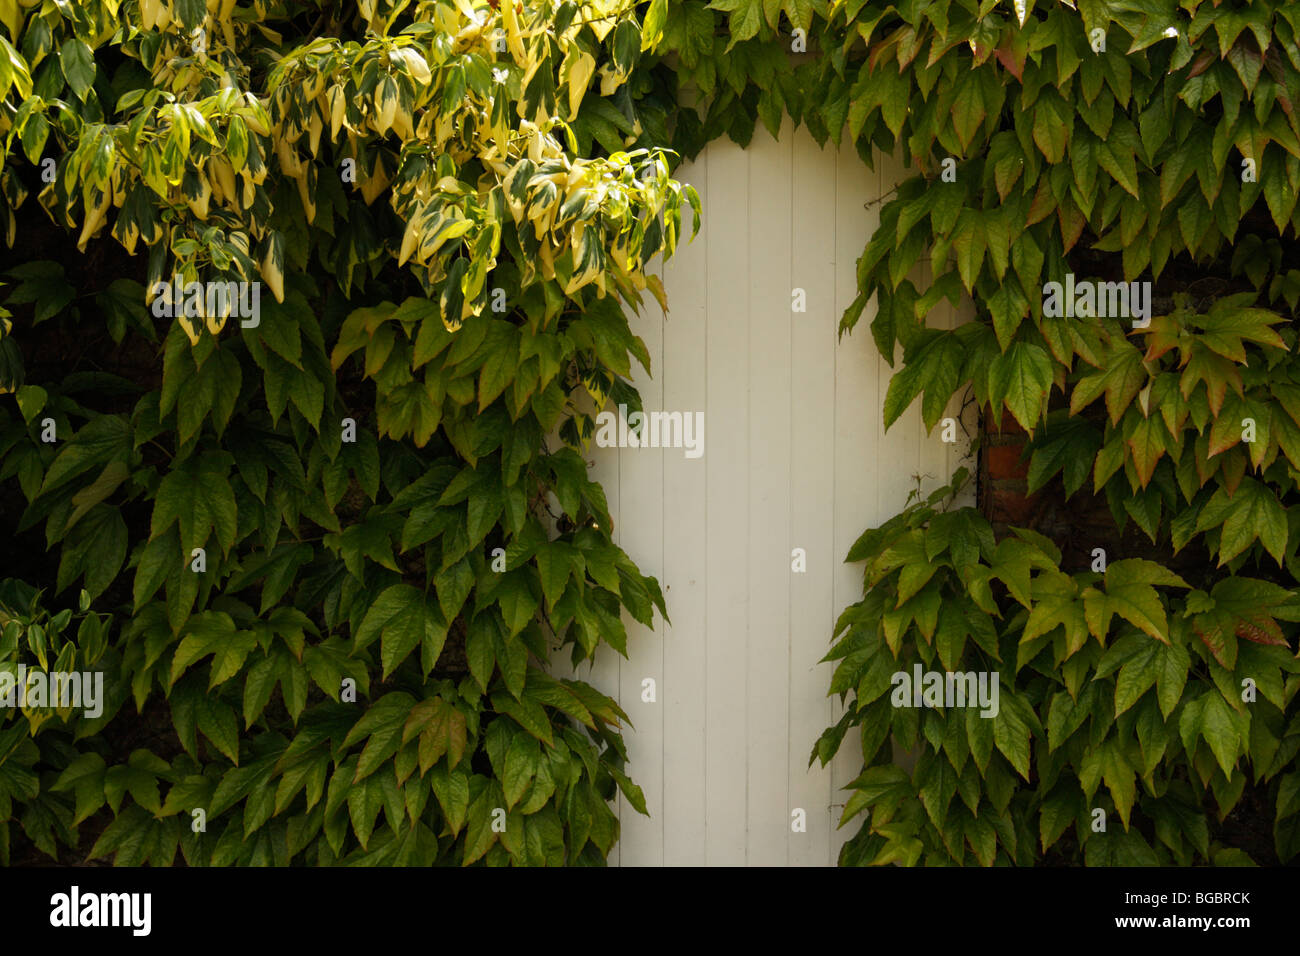 White Door surrounded by Viginia Creeper, Parthenocissus quinquefolia Stock Photo